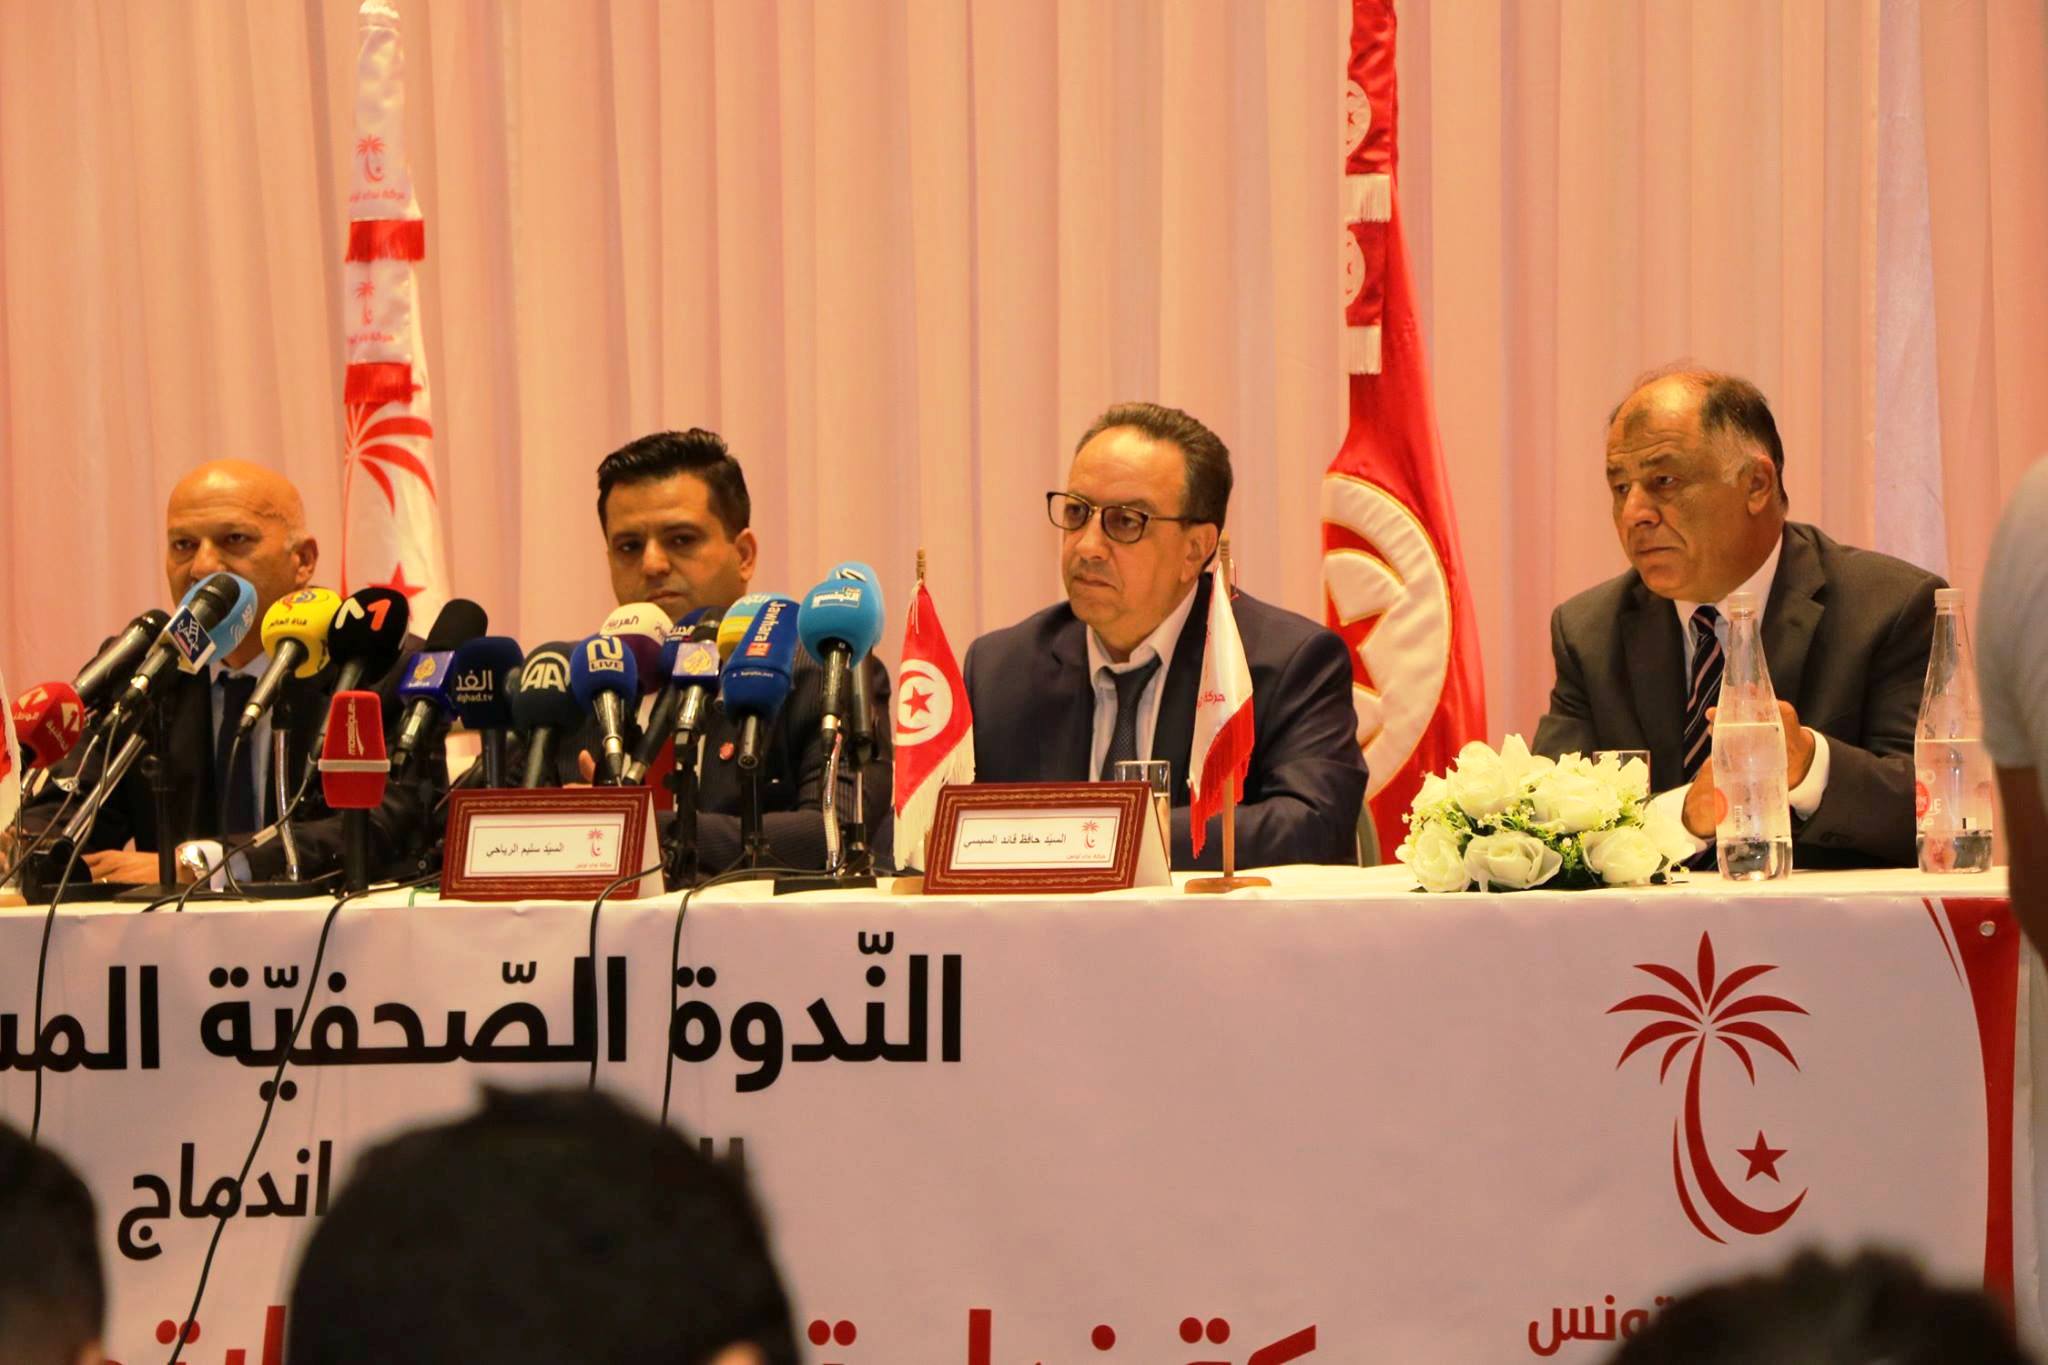 نداء تونس بدأ بالاندماج مع حزب الوطني الحرّ استعدادا لمواجهة النهضة الاسلامية